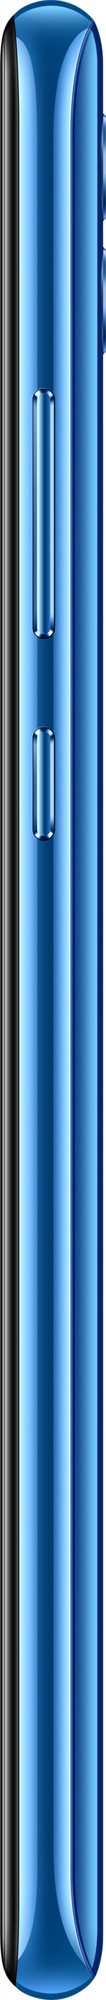 Honor 10 Lite 3/64GB Blue EU